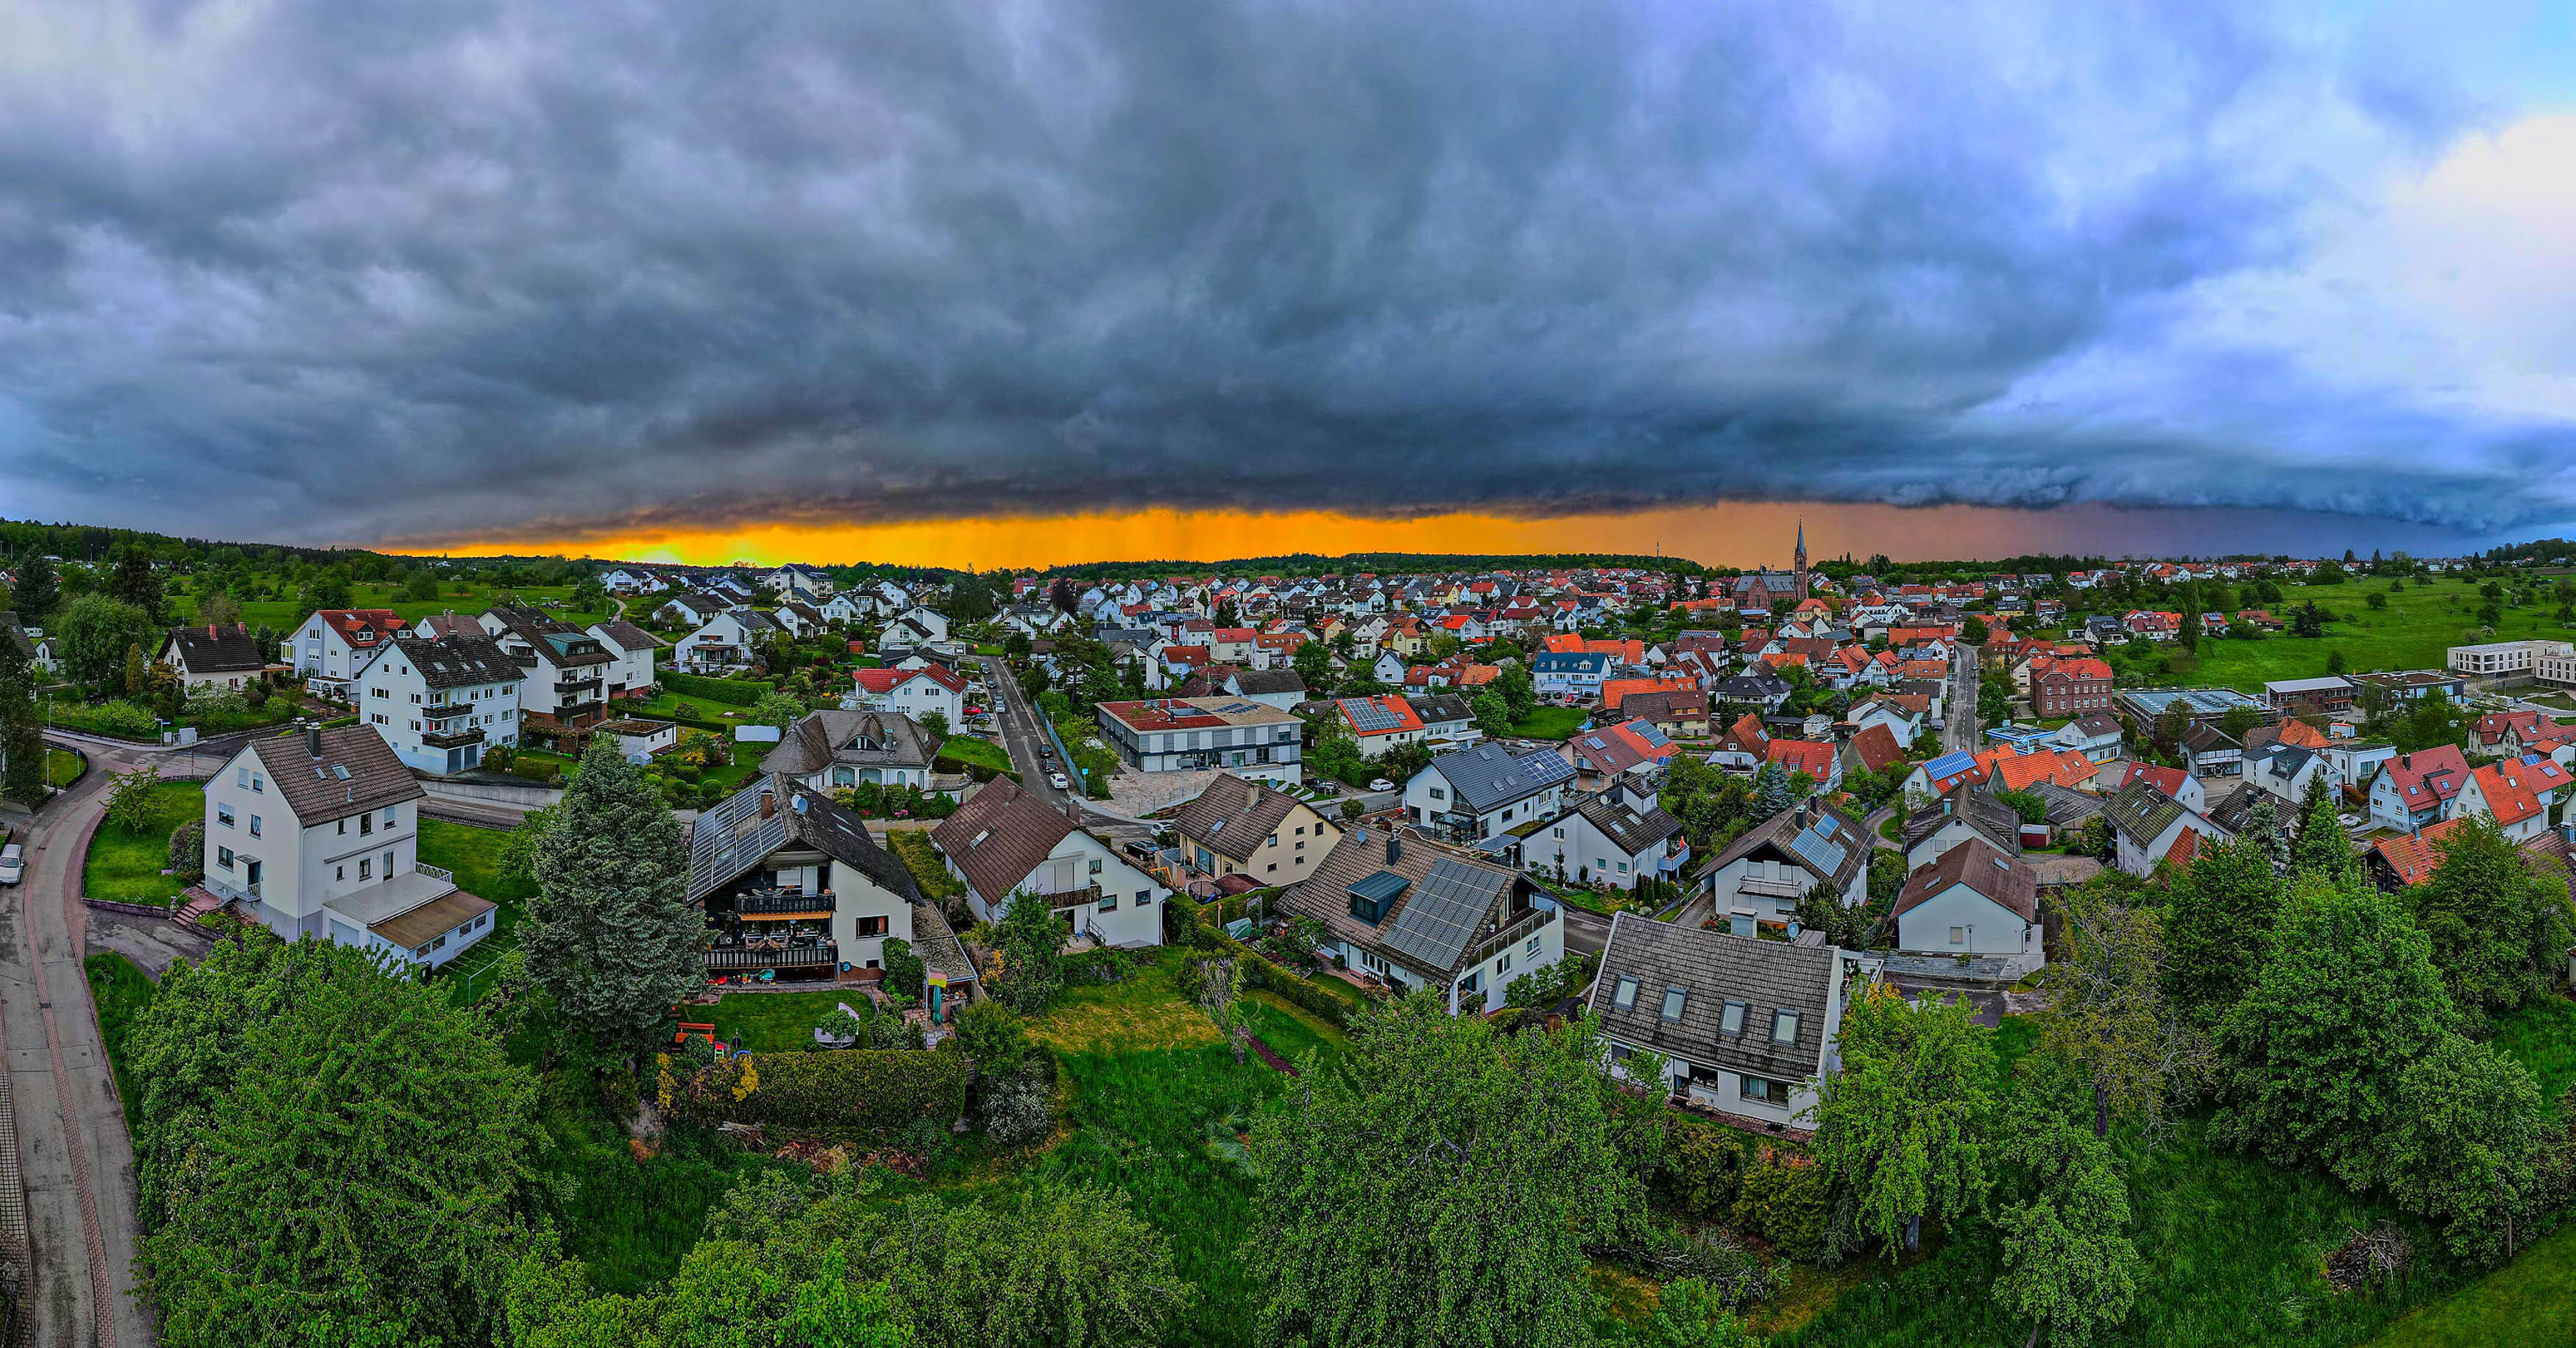 Tornado verwüstet Deutsche Ortschaft! Schwere Schäden - DWD bestätigt Vermutung!